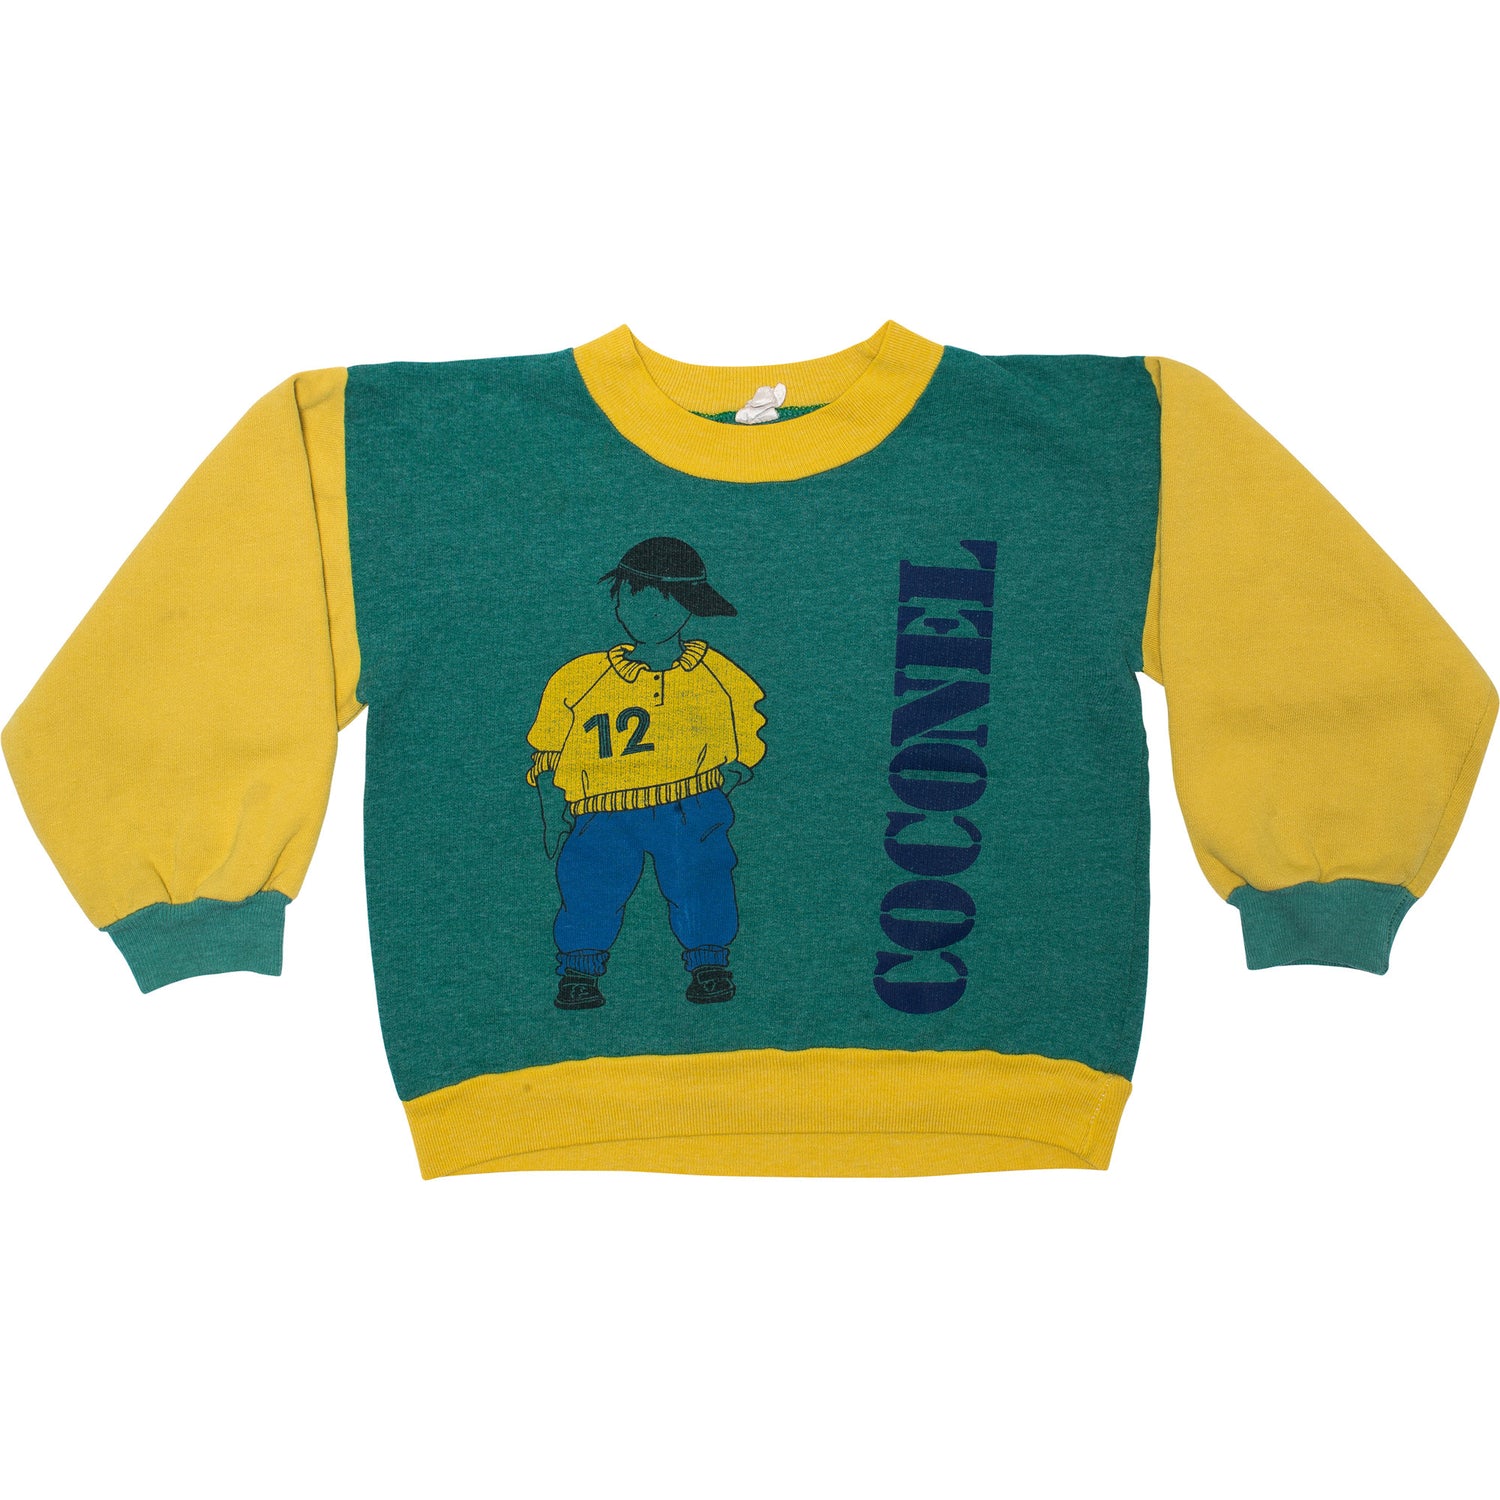 KIDS Coconel Vintage Sweatshirt